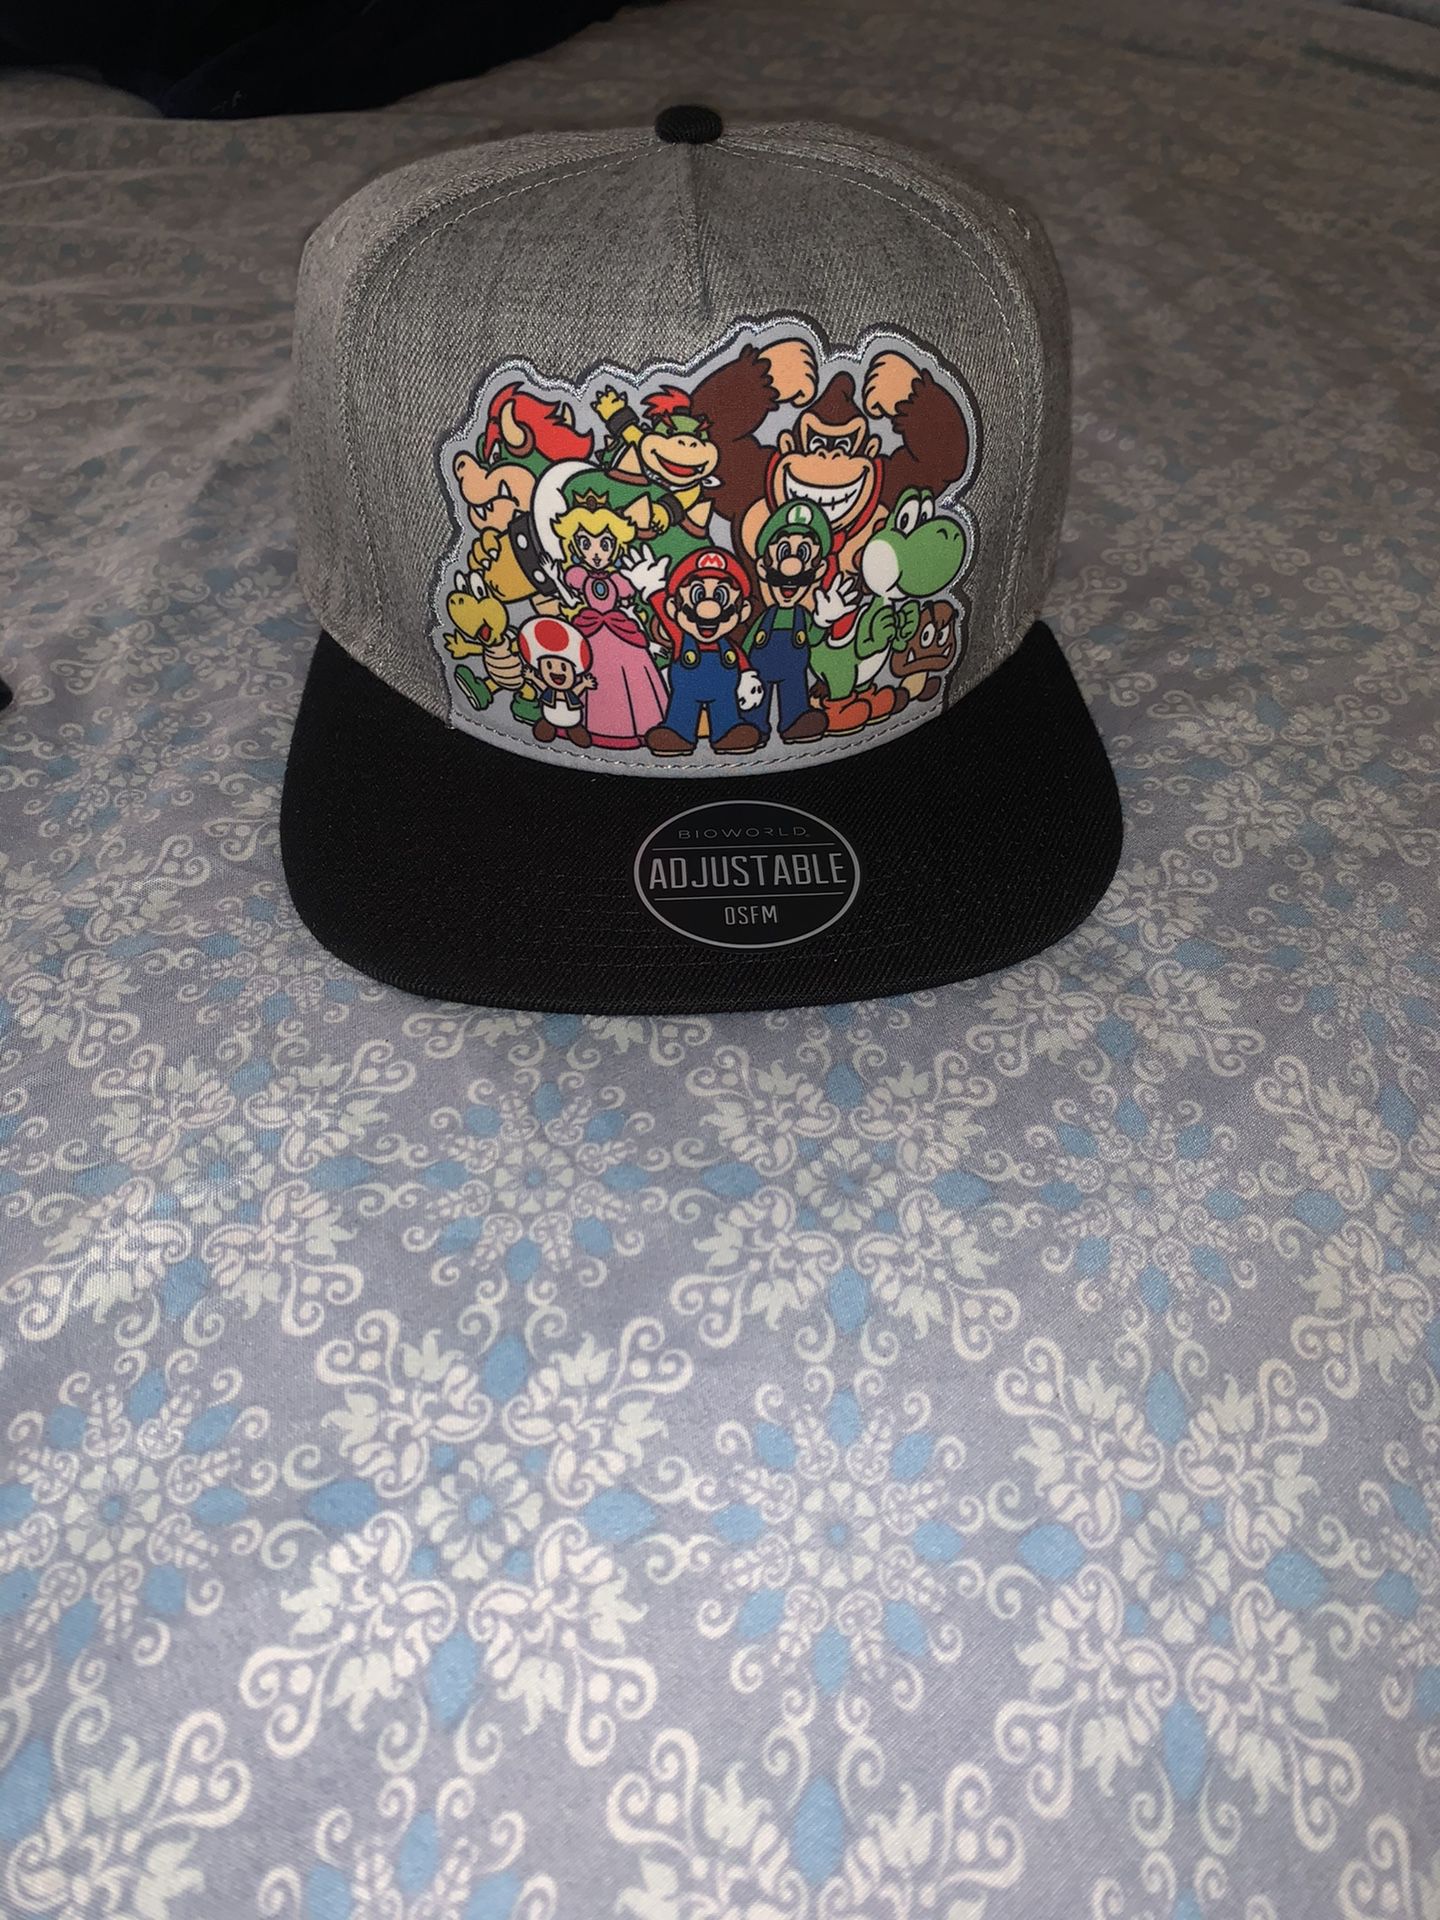 Mario party hat